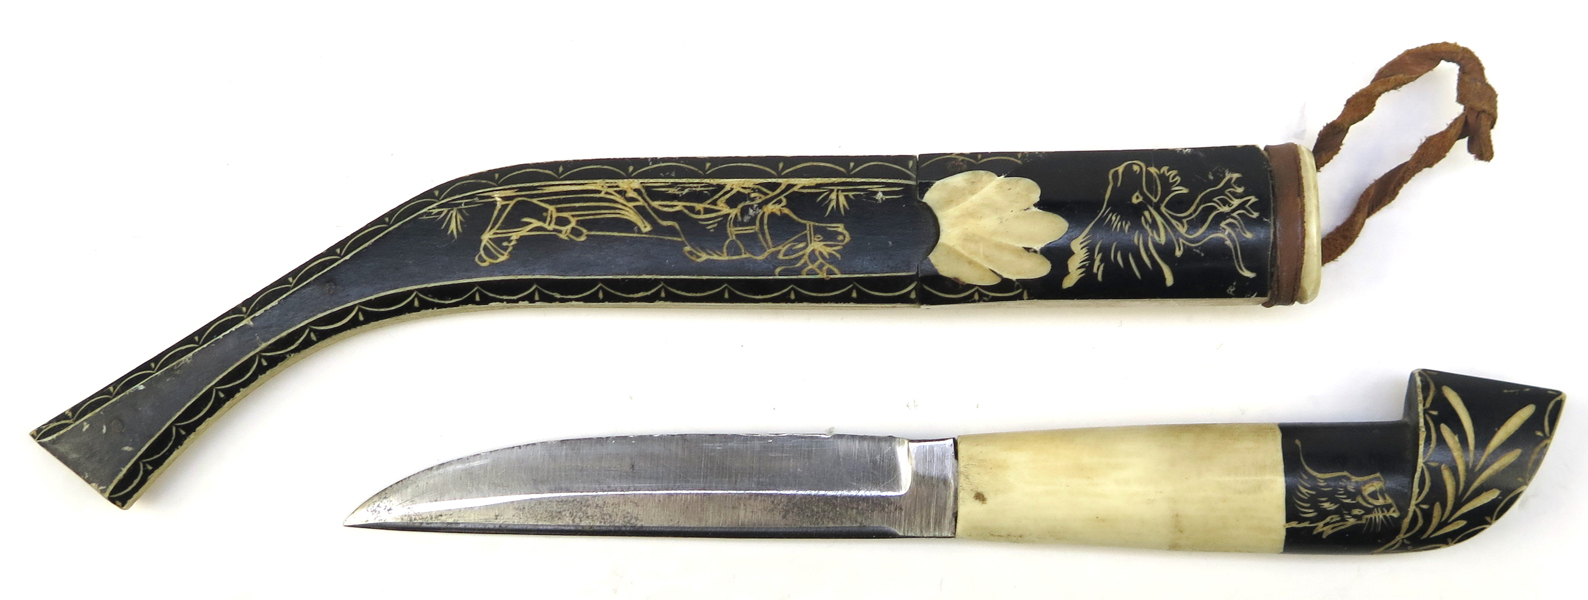 Kniv i balja, helhorn, samearbete, 1900-talets mitt, dekor av same i akkja mm, total l 27 cm_38245a_lg.jpeg